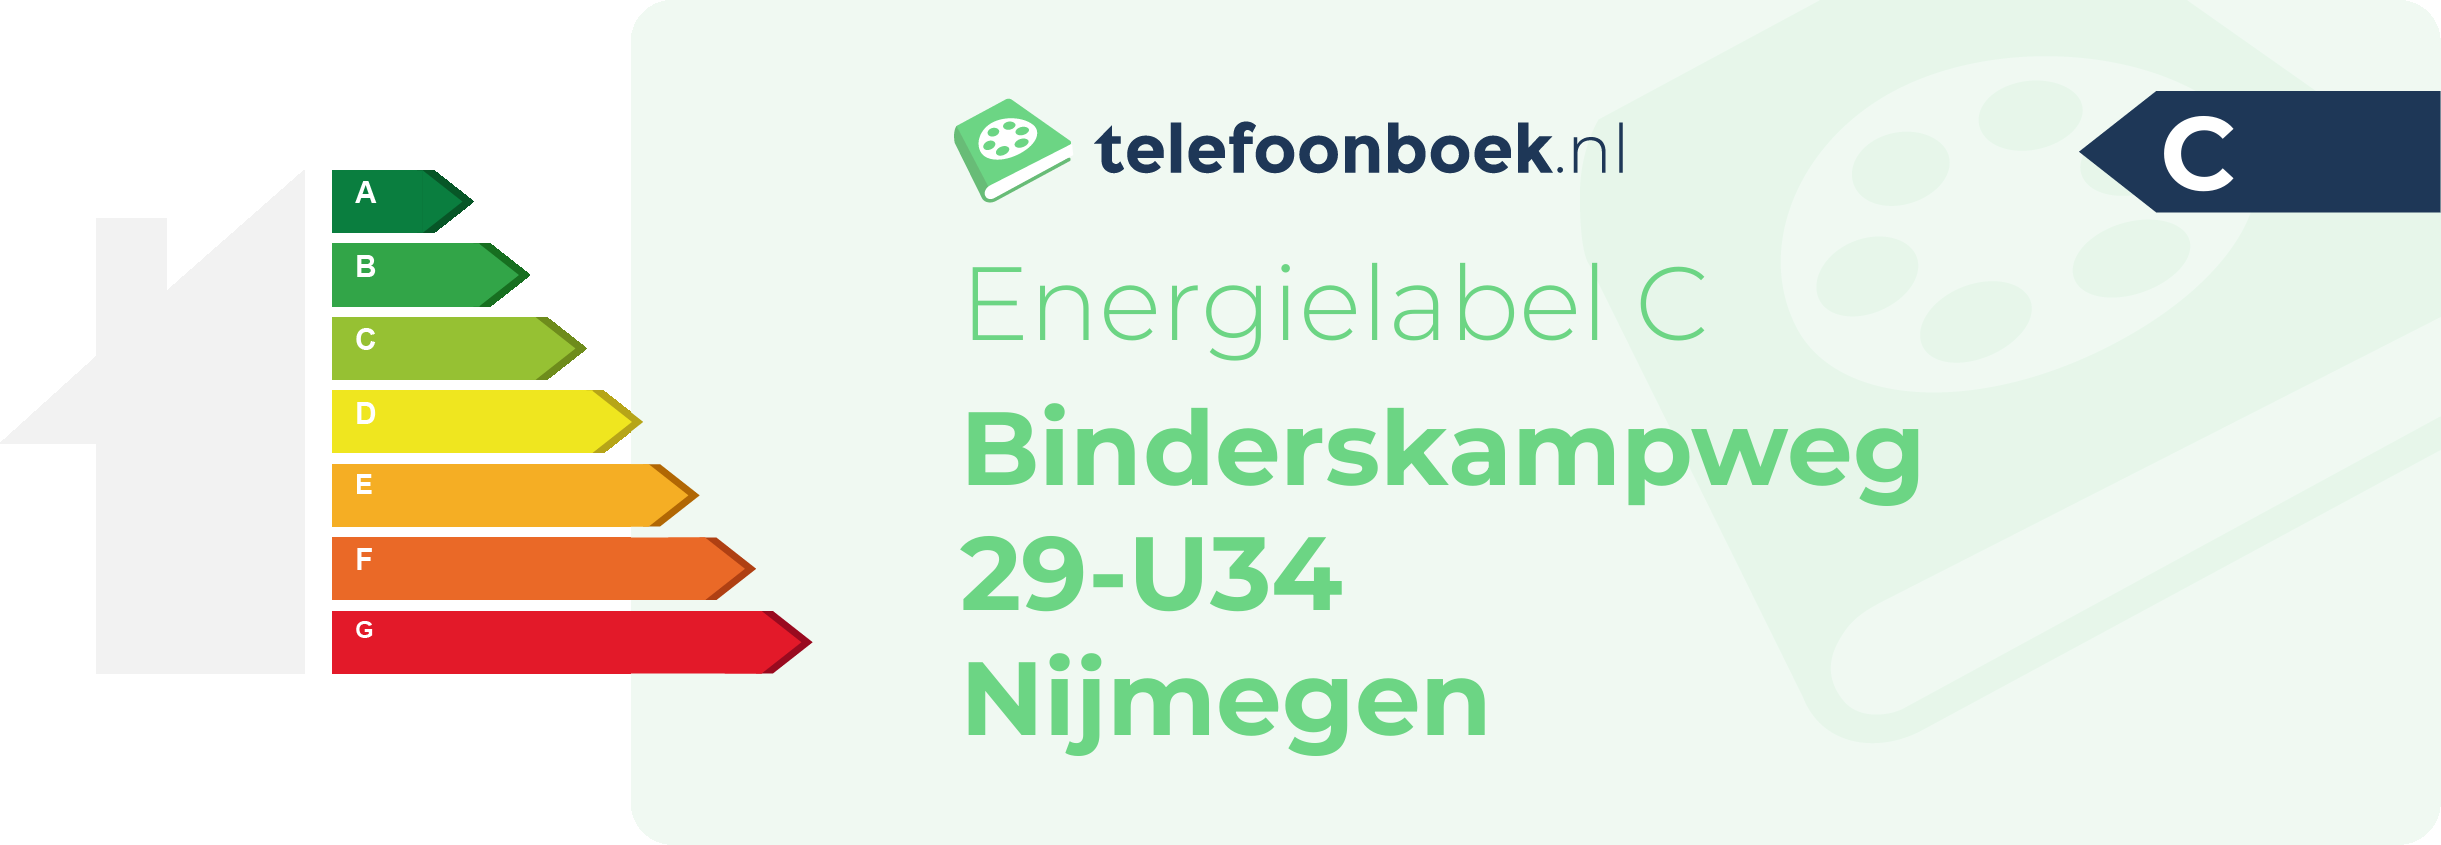 Energielabel Binderskampweg 29-U34 Nijmegen